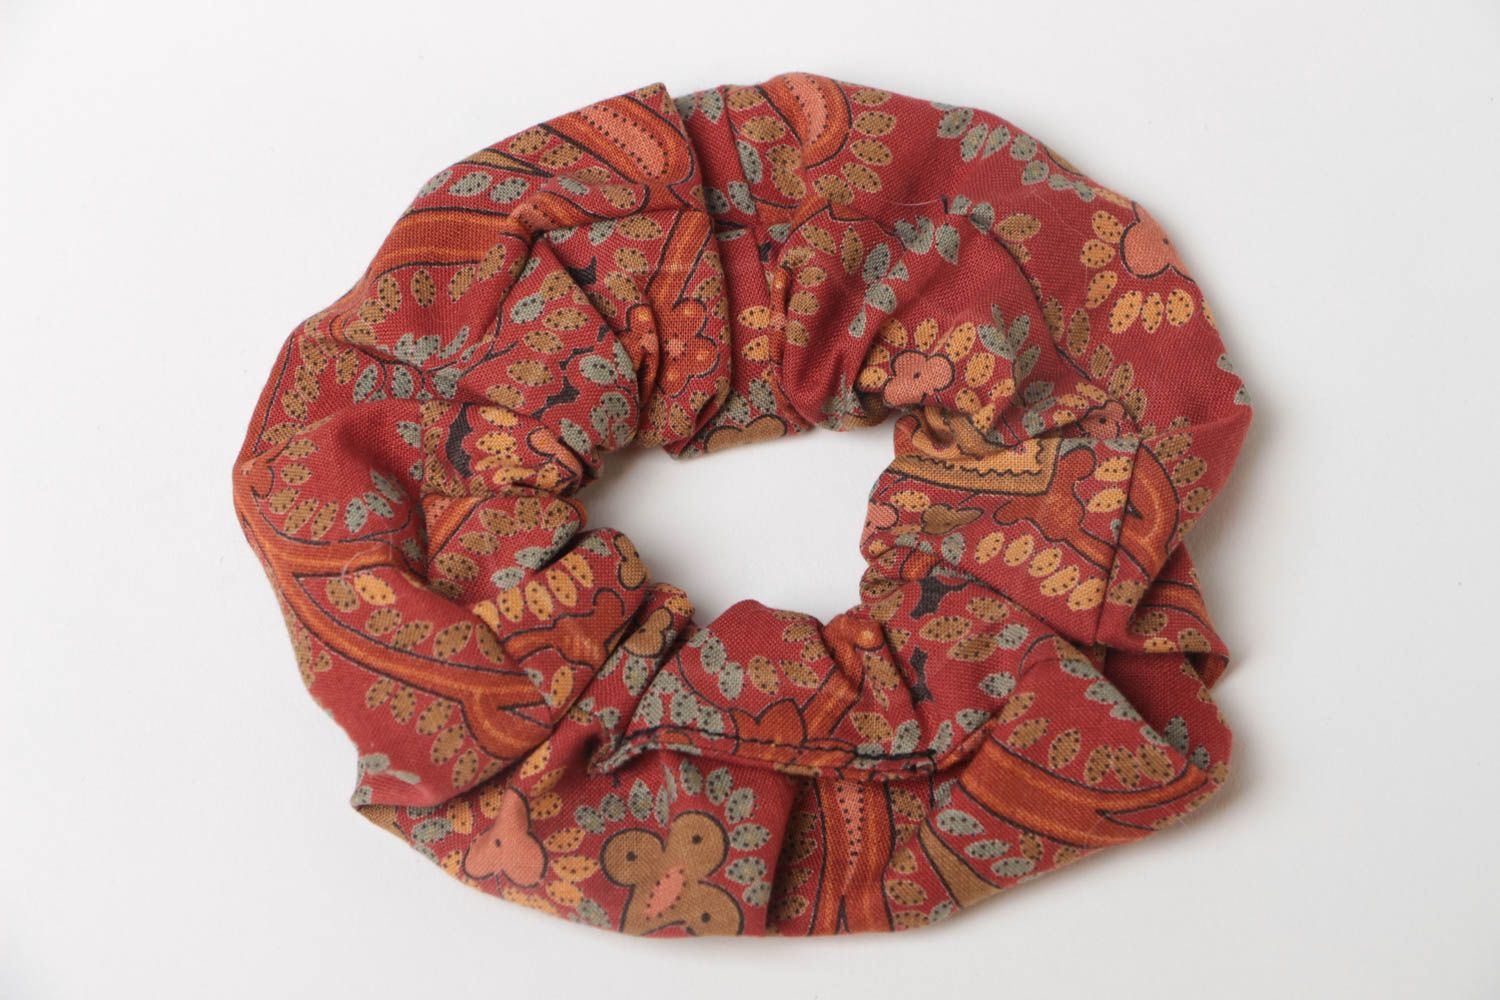 Nettes Stoff Haargummi handmade aus Baumwolle in Terrakotta Farbe schön foto 2